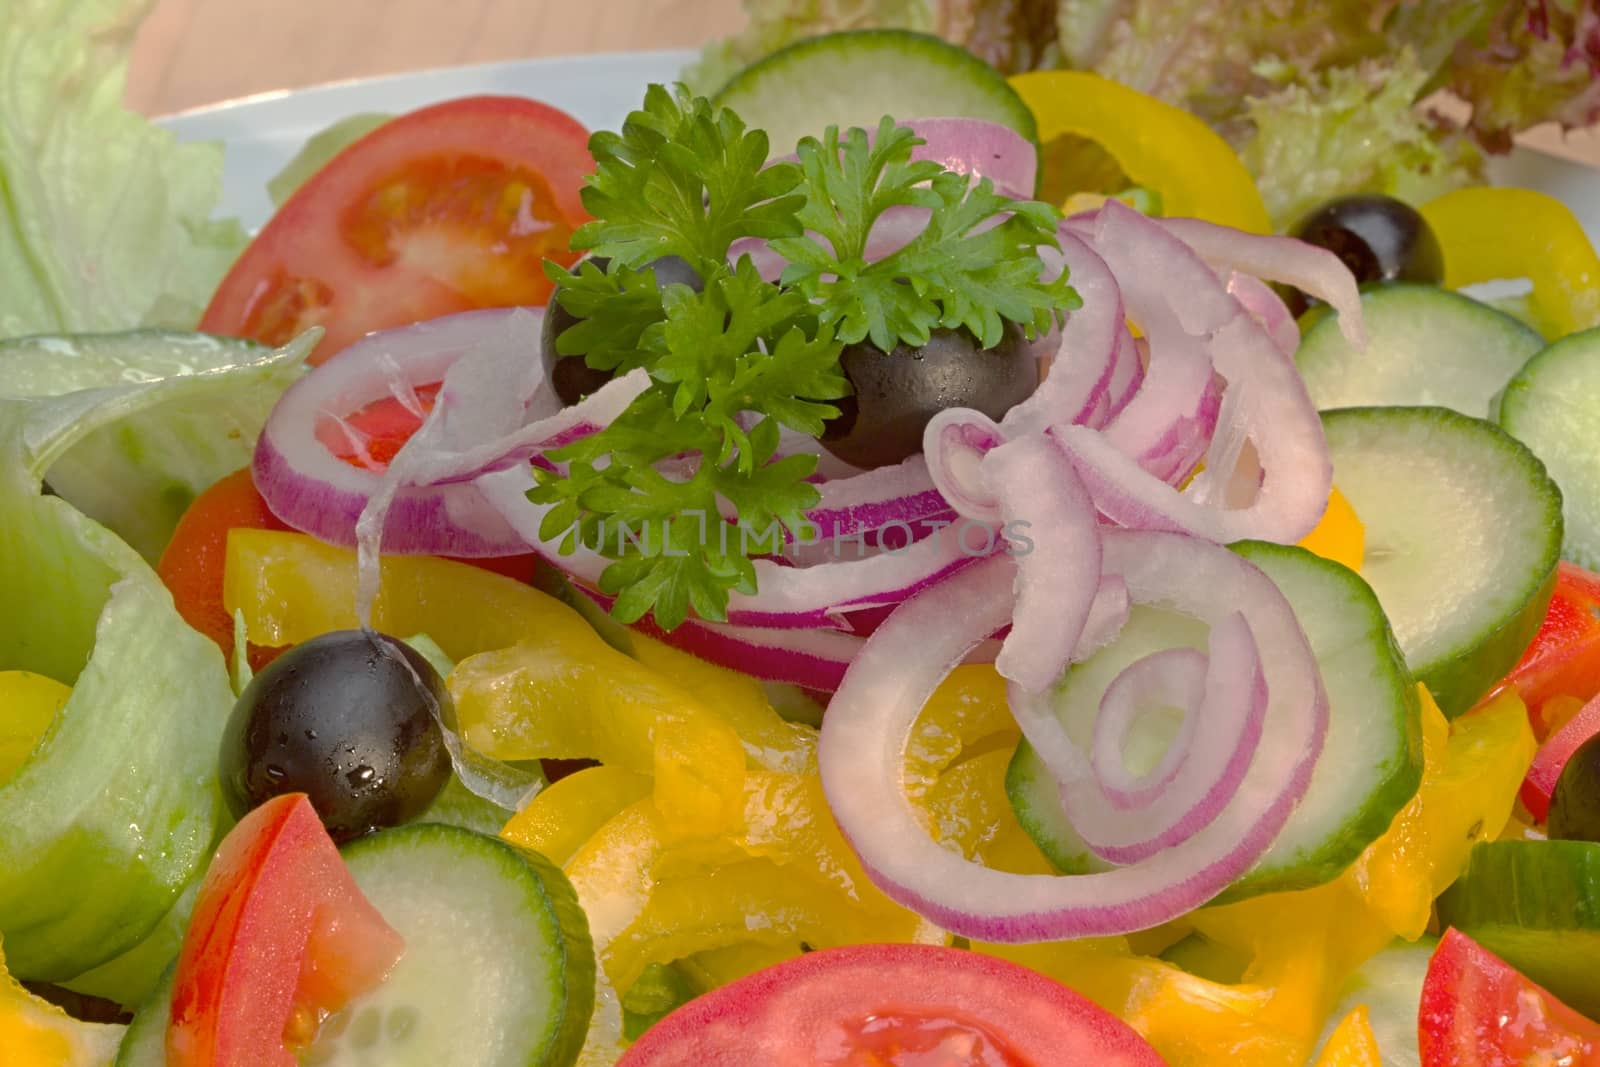 Vegetable salad ingredients by Dermot68